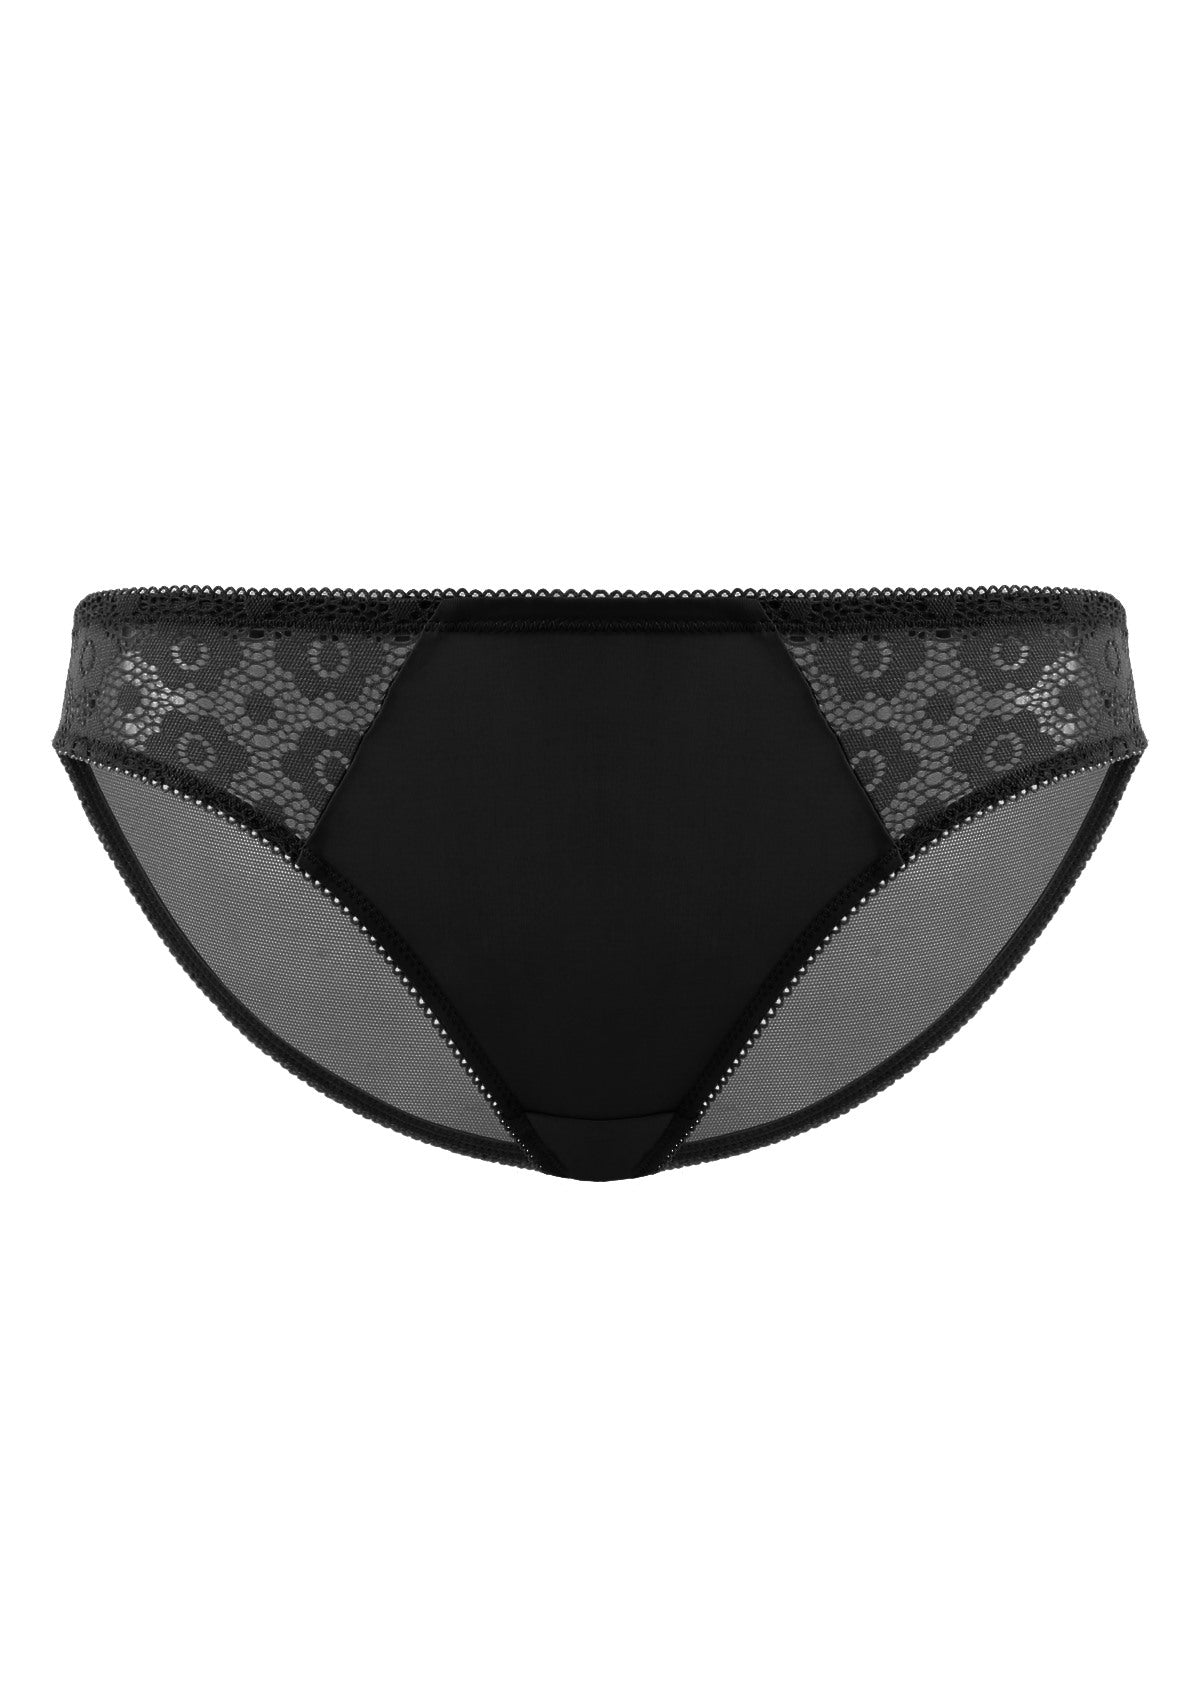 HSIA Serena Comfortable Trendy Lace Trim Bikini Underwear - XXL / Champagne